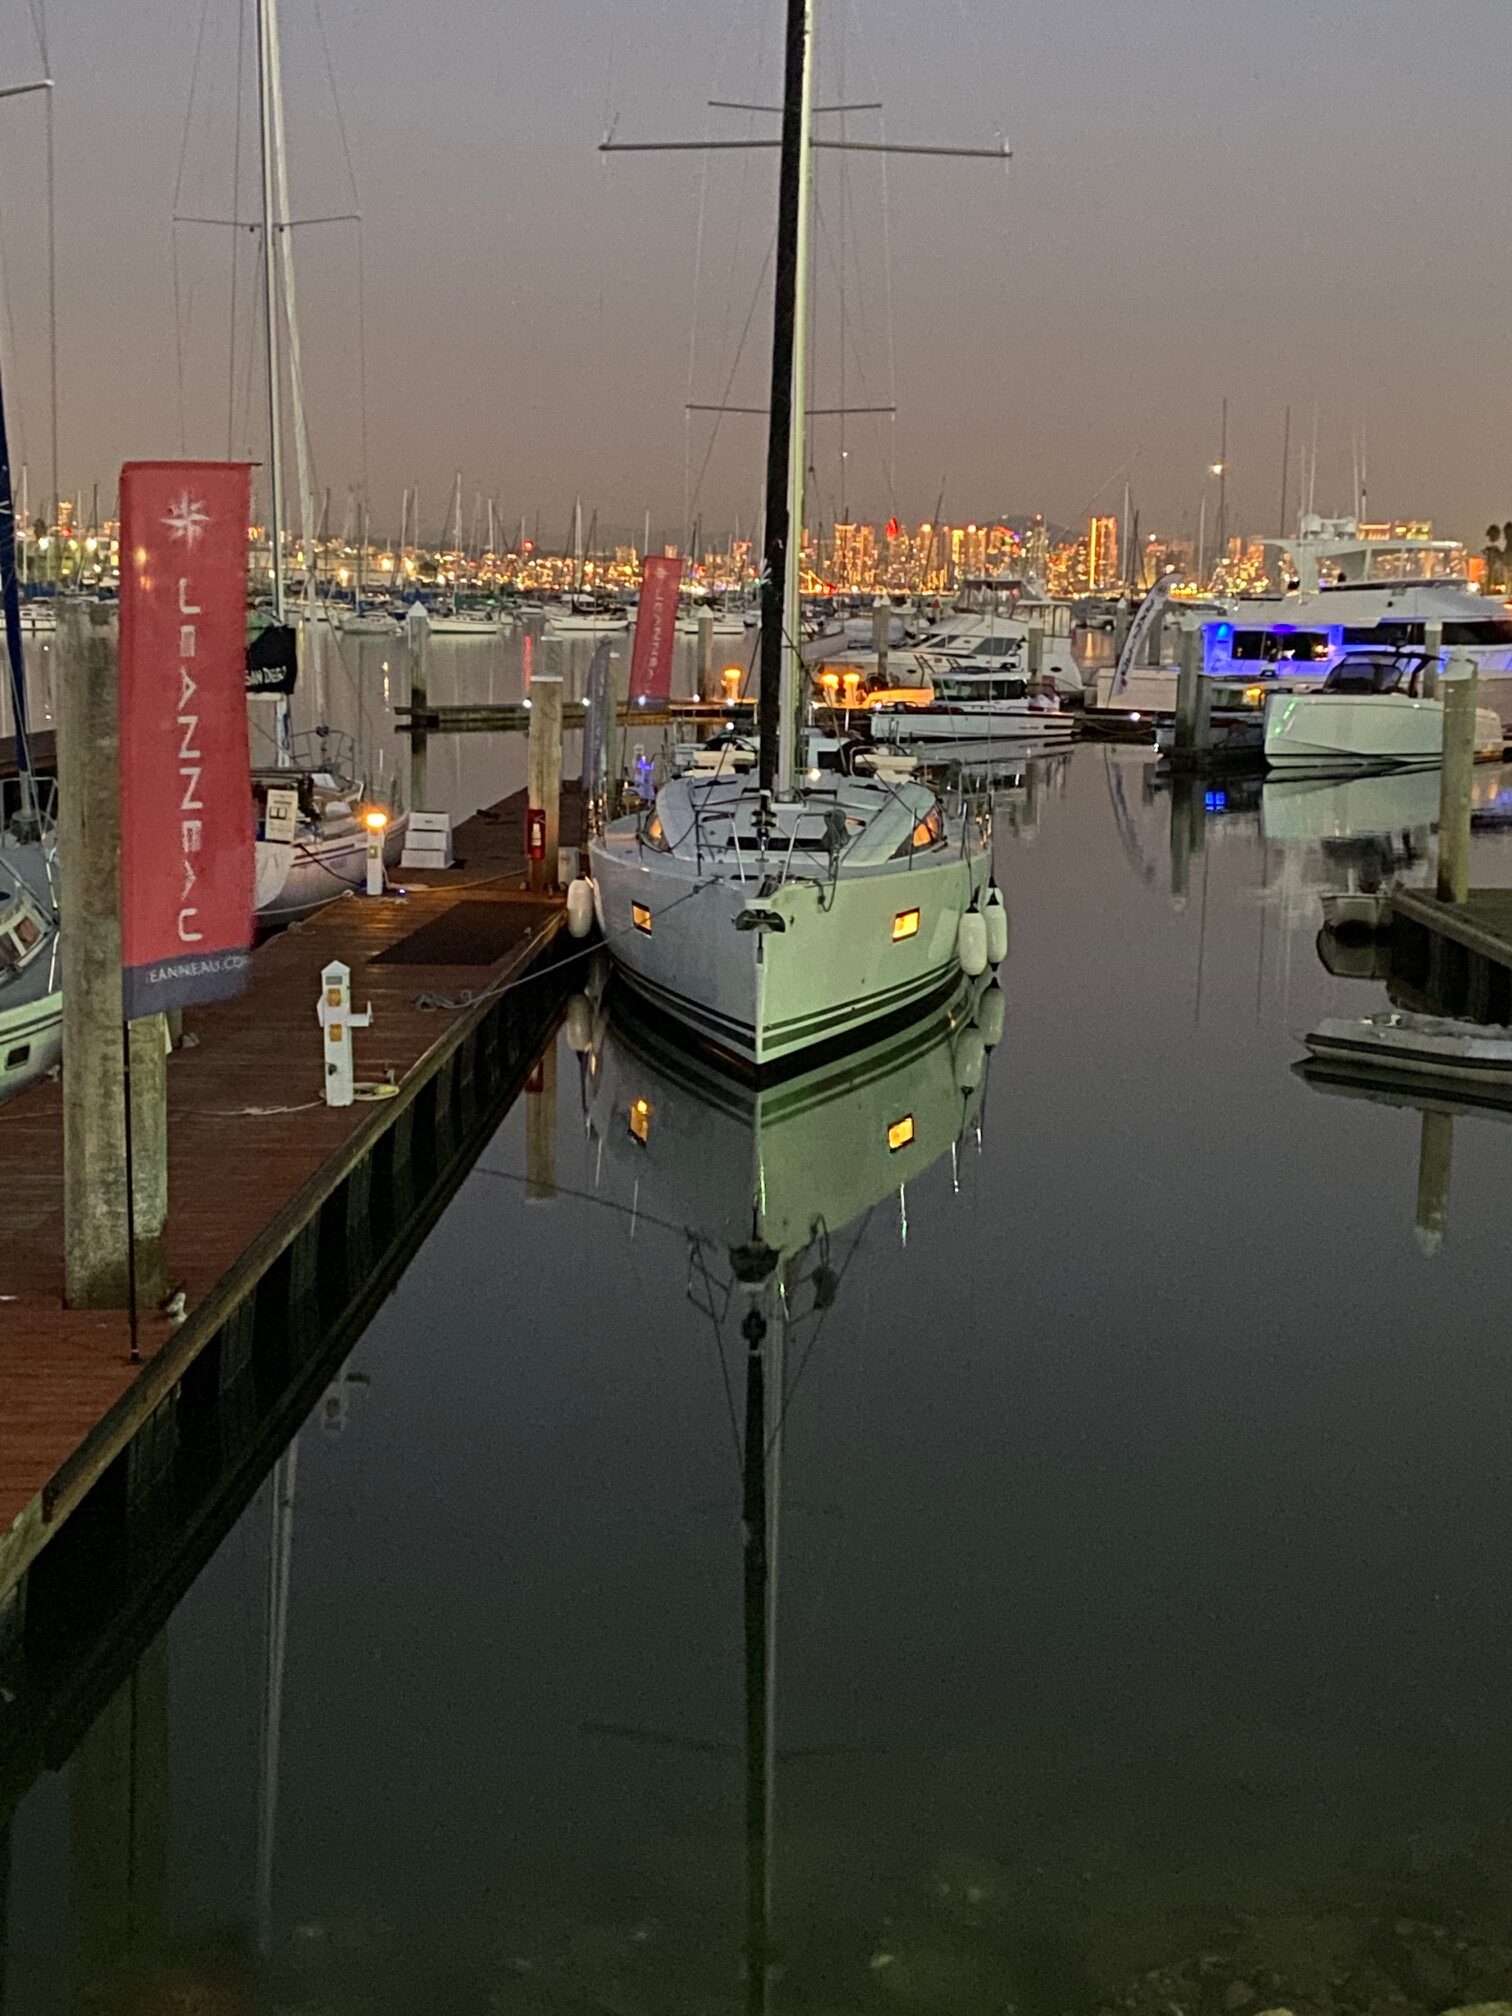 sailboat at dock